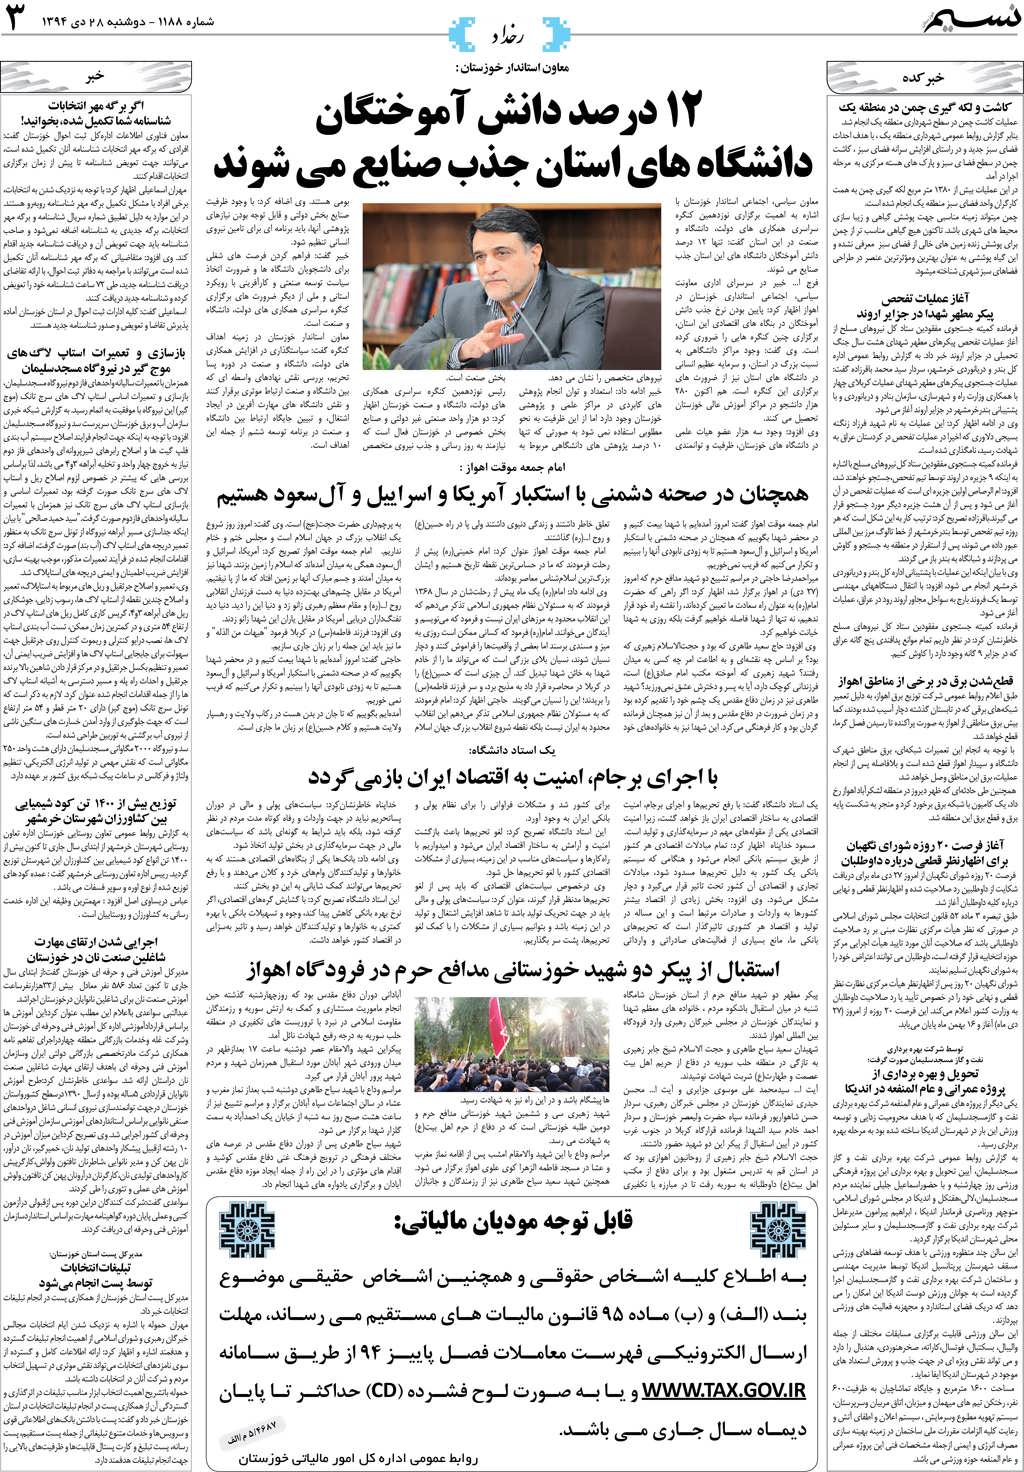 صفحه رخداد روزنامه نسیم شماره 1188